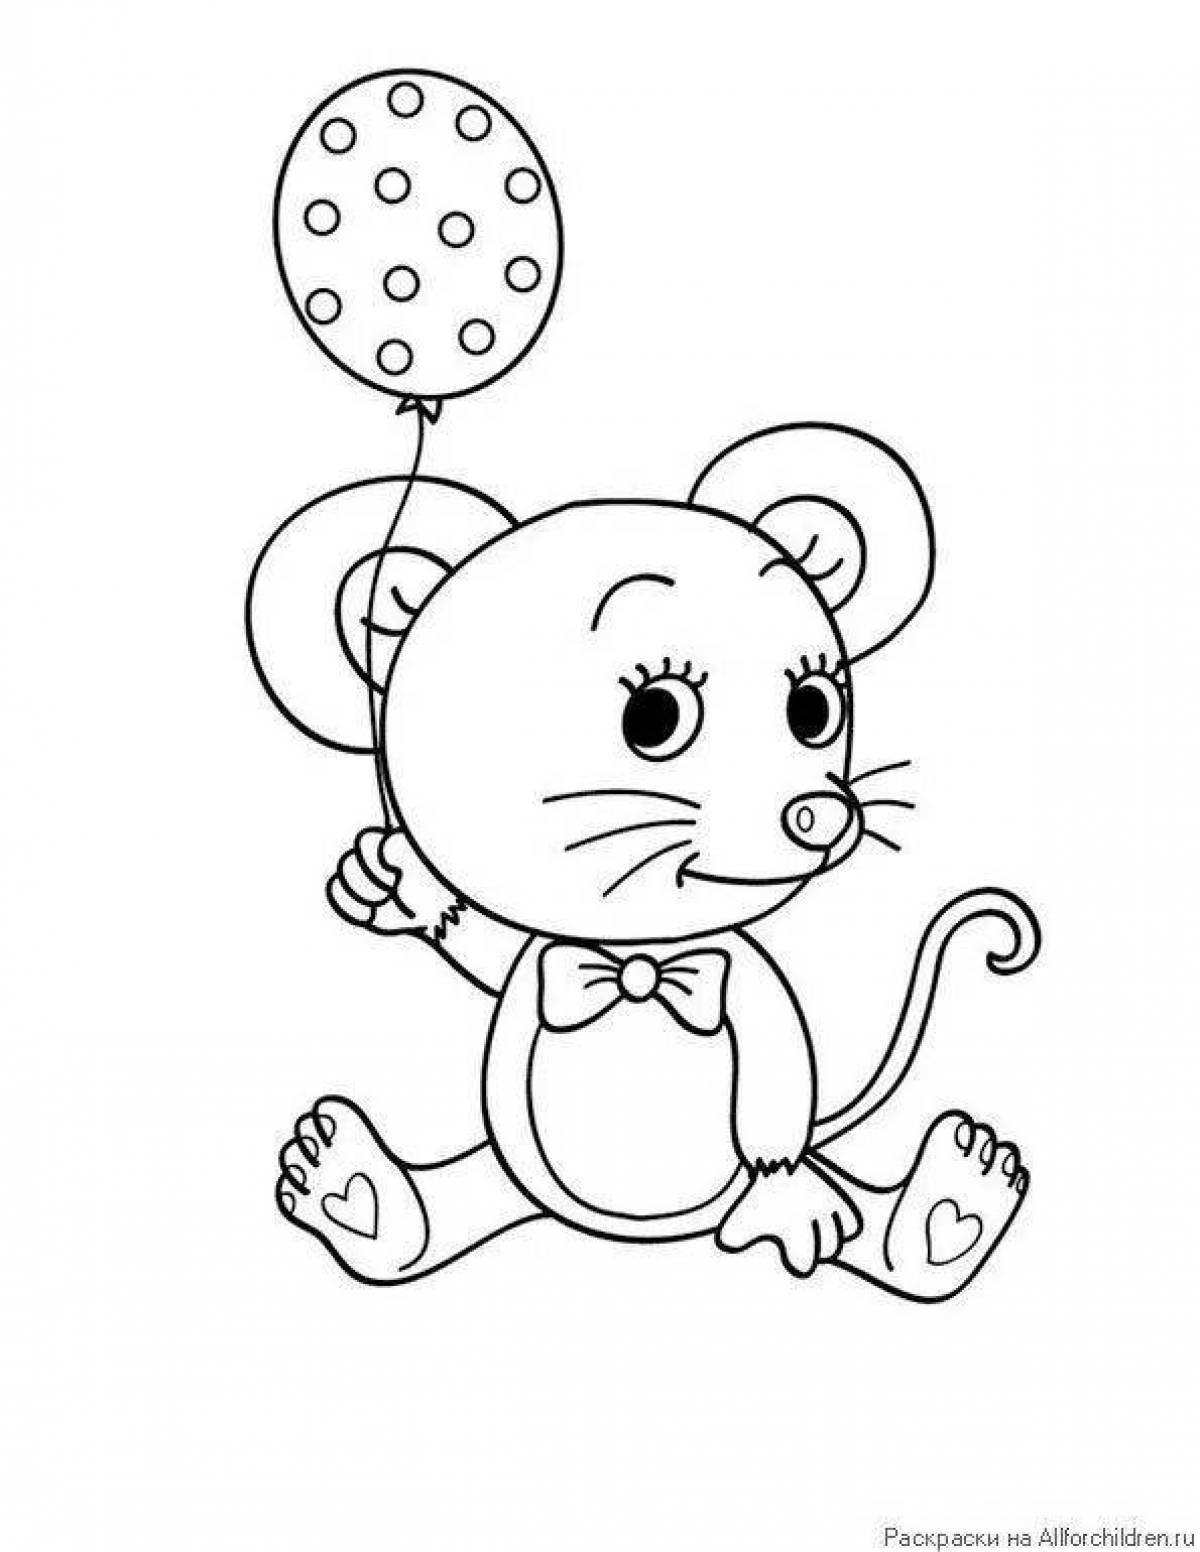 Раскраска мышь распечатать. Раскраска мышка. Мышонок раскраска для детей. Мышь раскраска для детей. Мышка раскраска для детей.